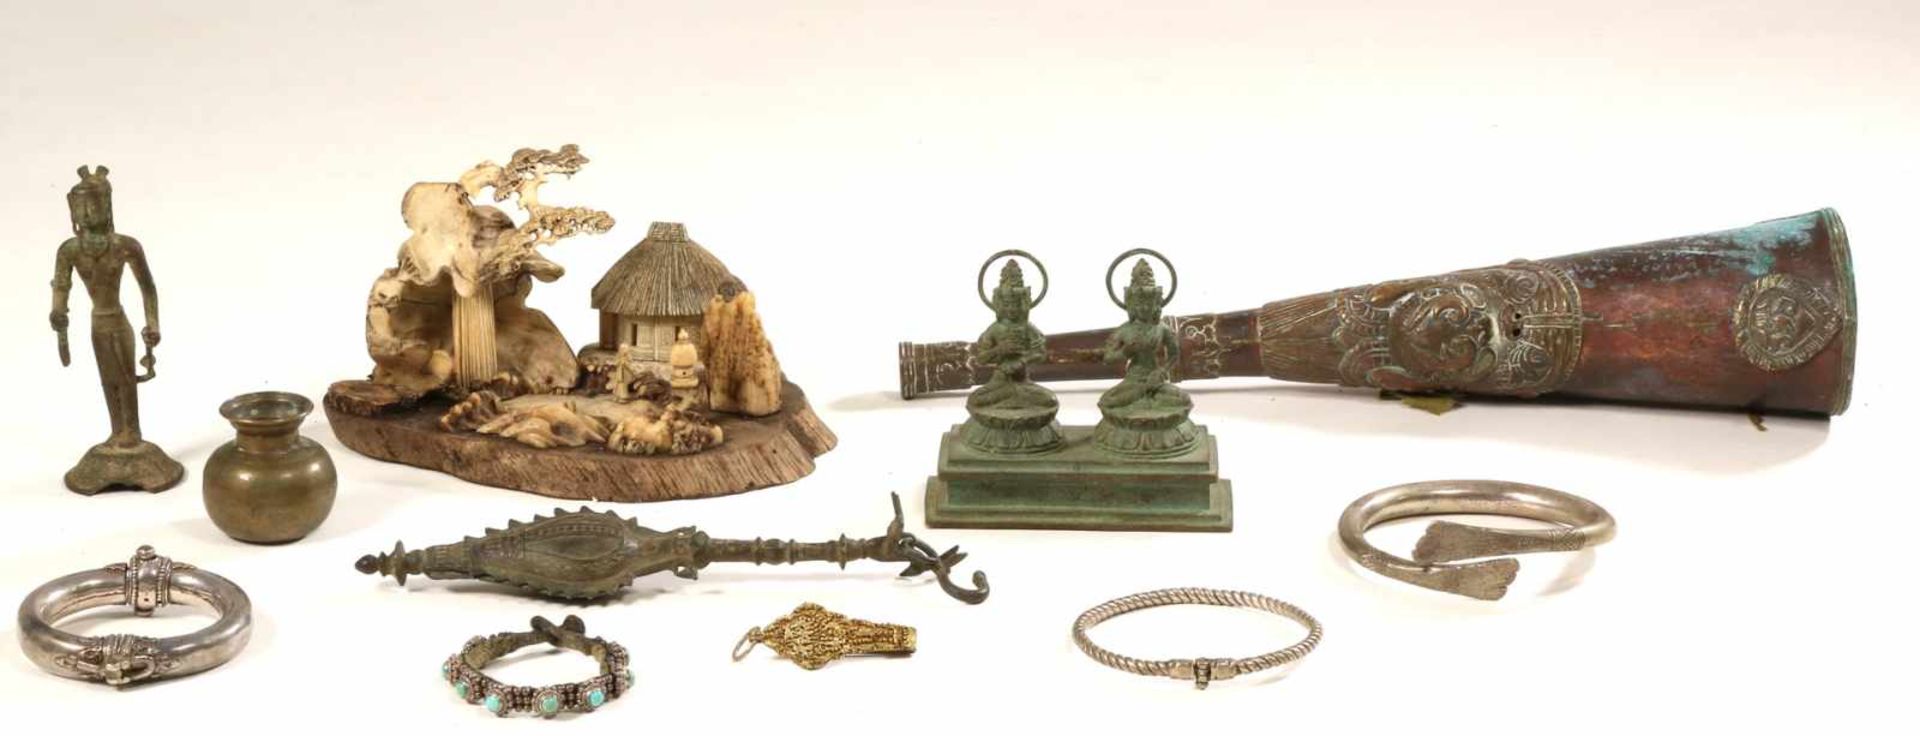 Azië, diverse metalen objecten,herkomst: Collectie Cserno, Amsterdam, [ds]300 - Bild 3 aus 3